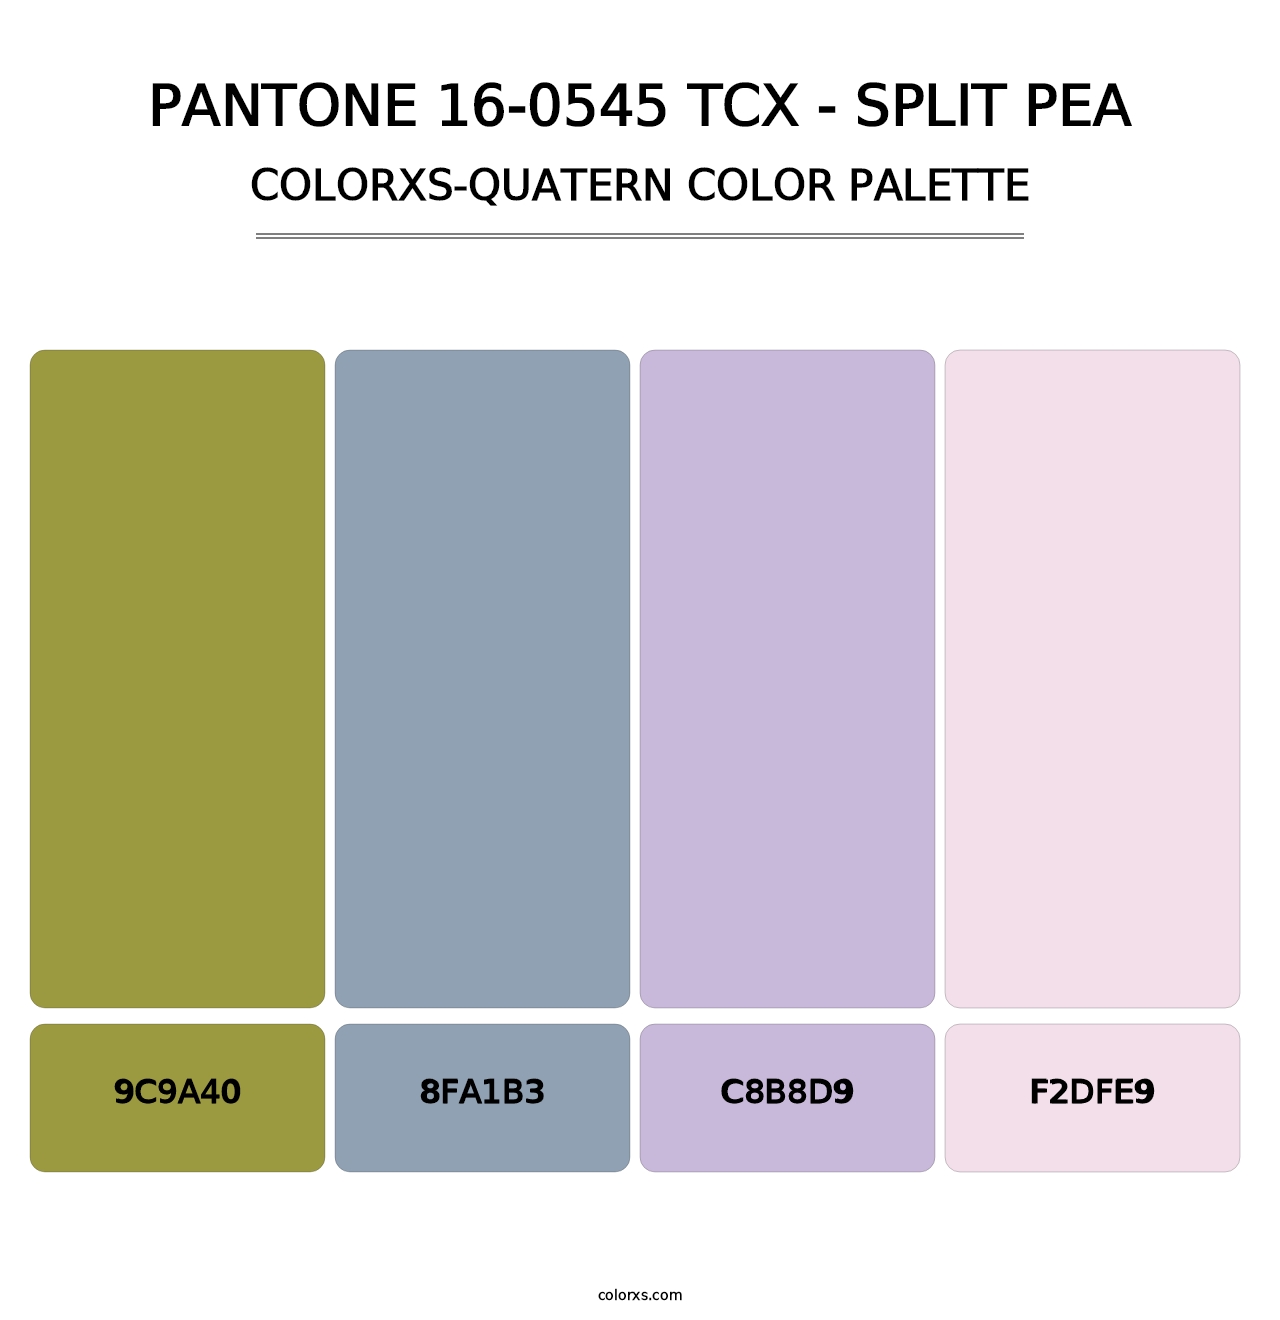 PANTONE 16-0545 TCX - Split Pea - Colorxs Quatern Palette